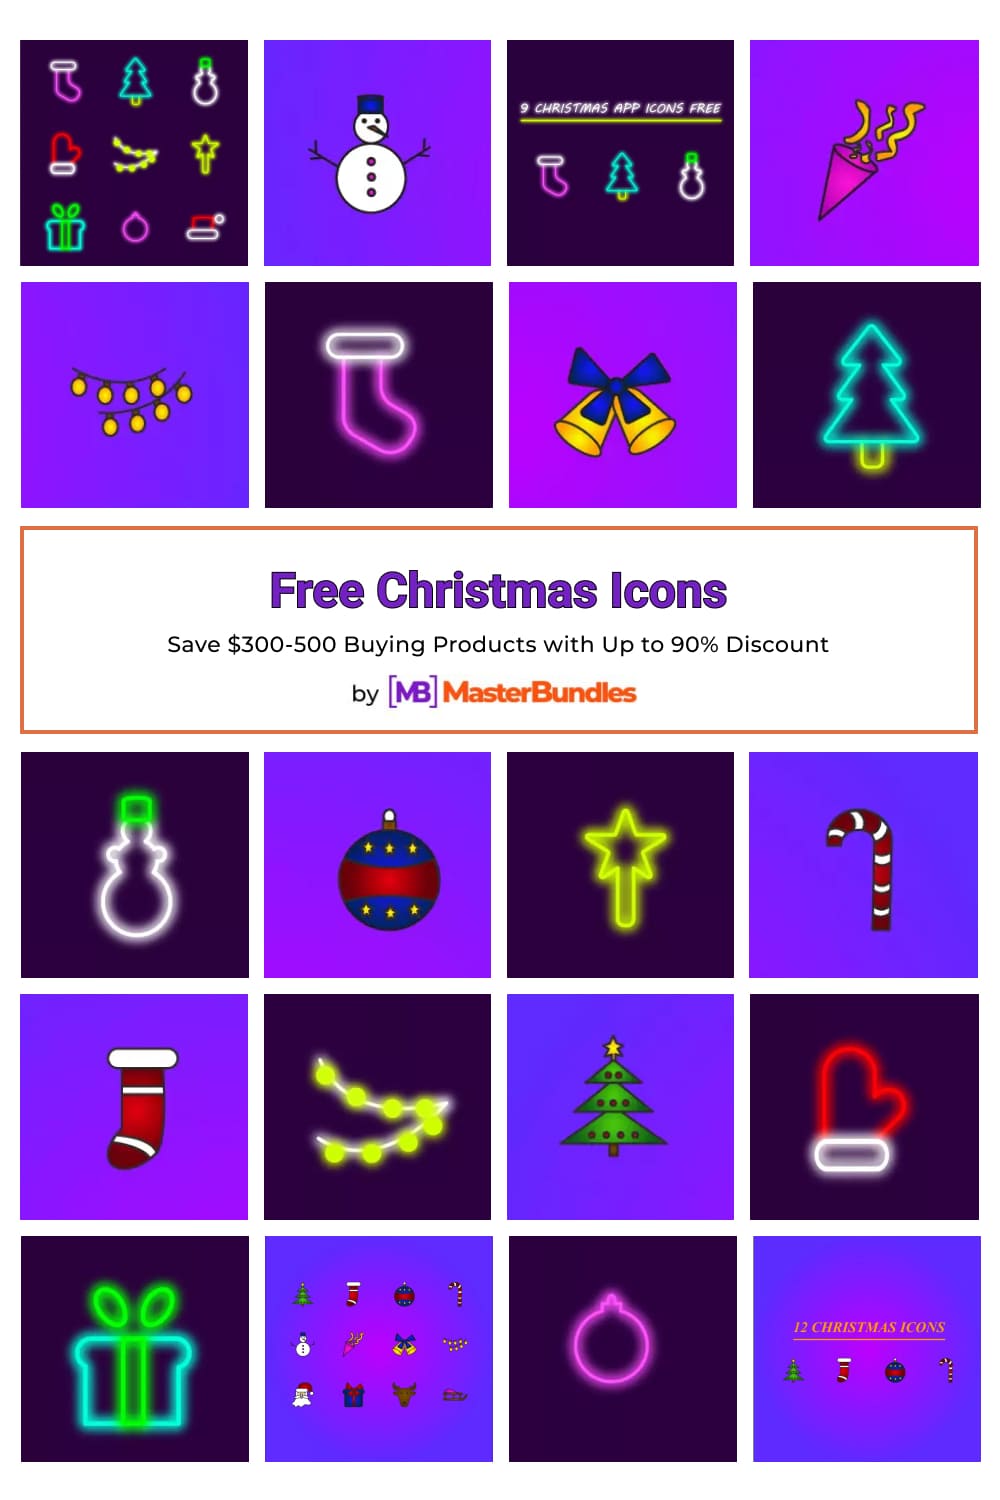 Free Christmas Icons Pinterest image.